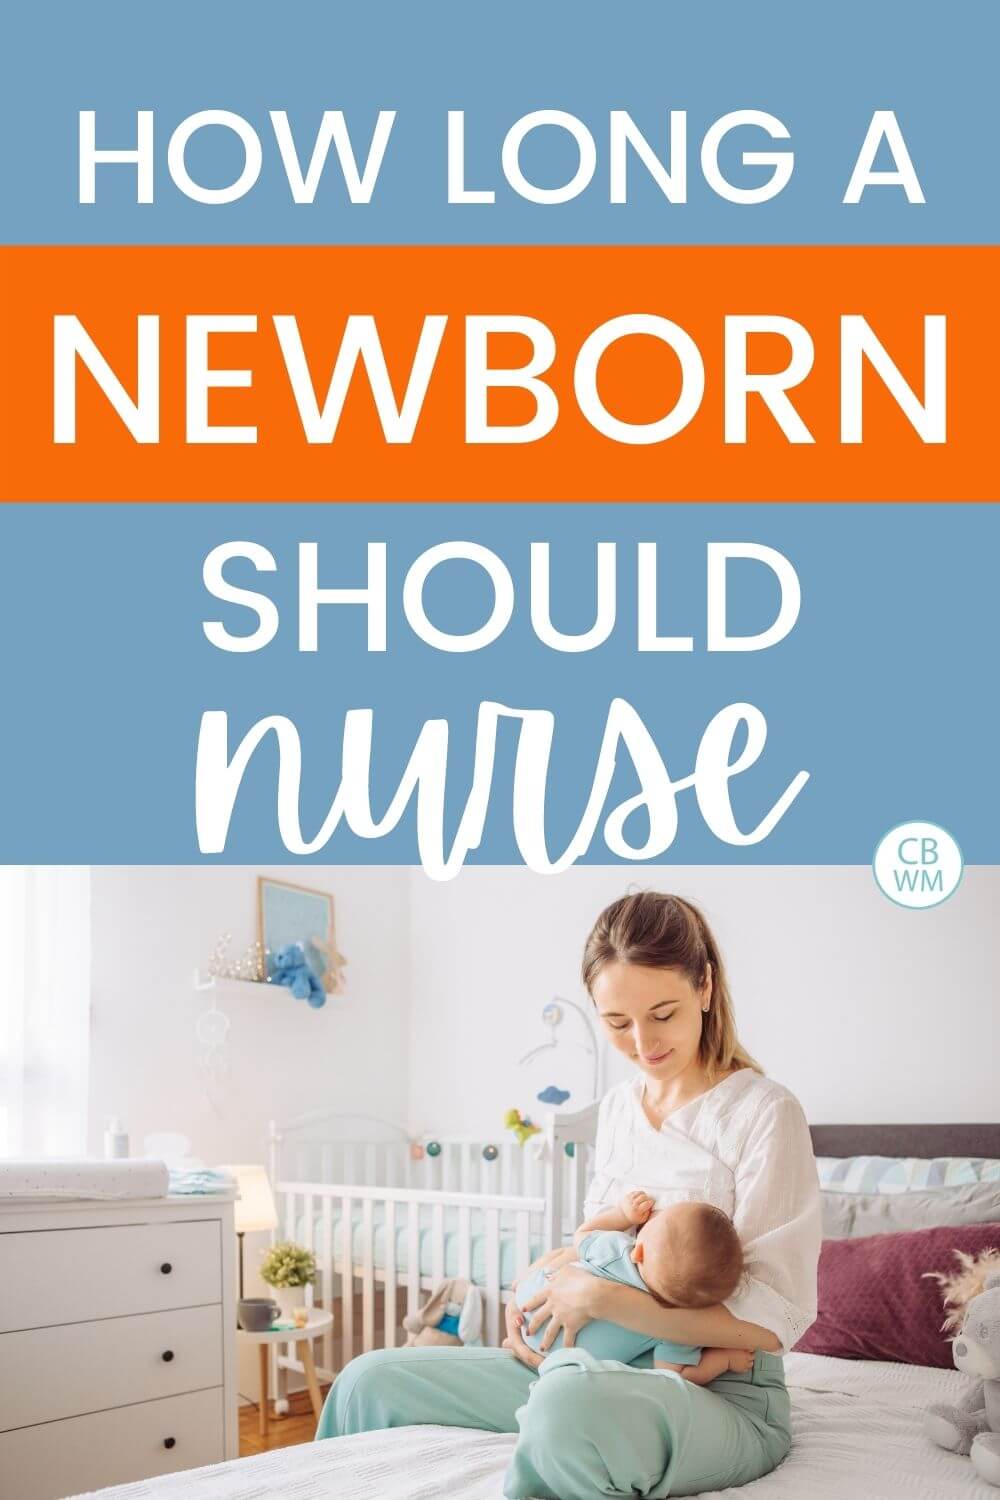 How Long Should a Newborn Feeding Last? - Babywise Mom